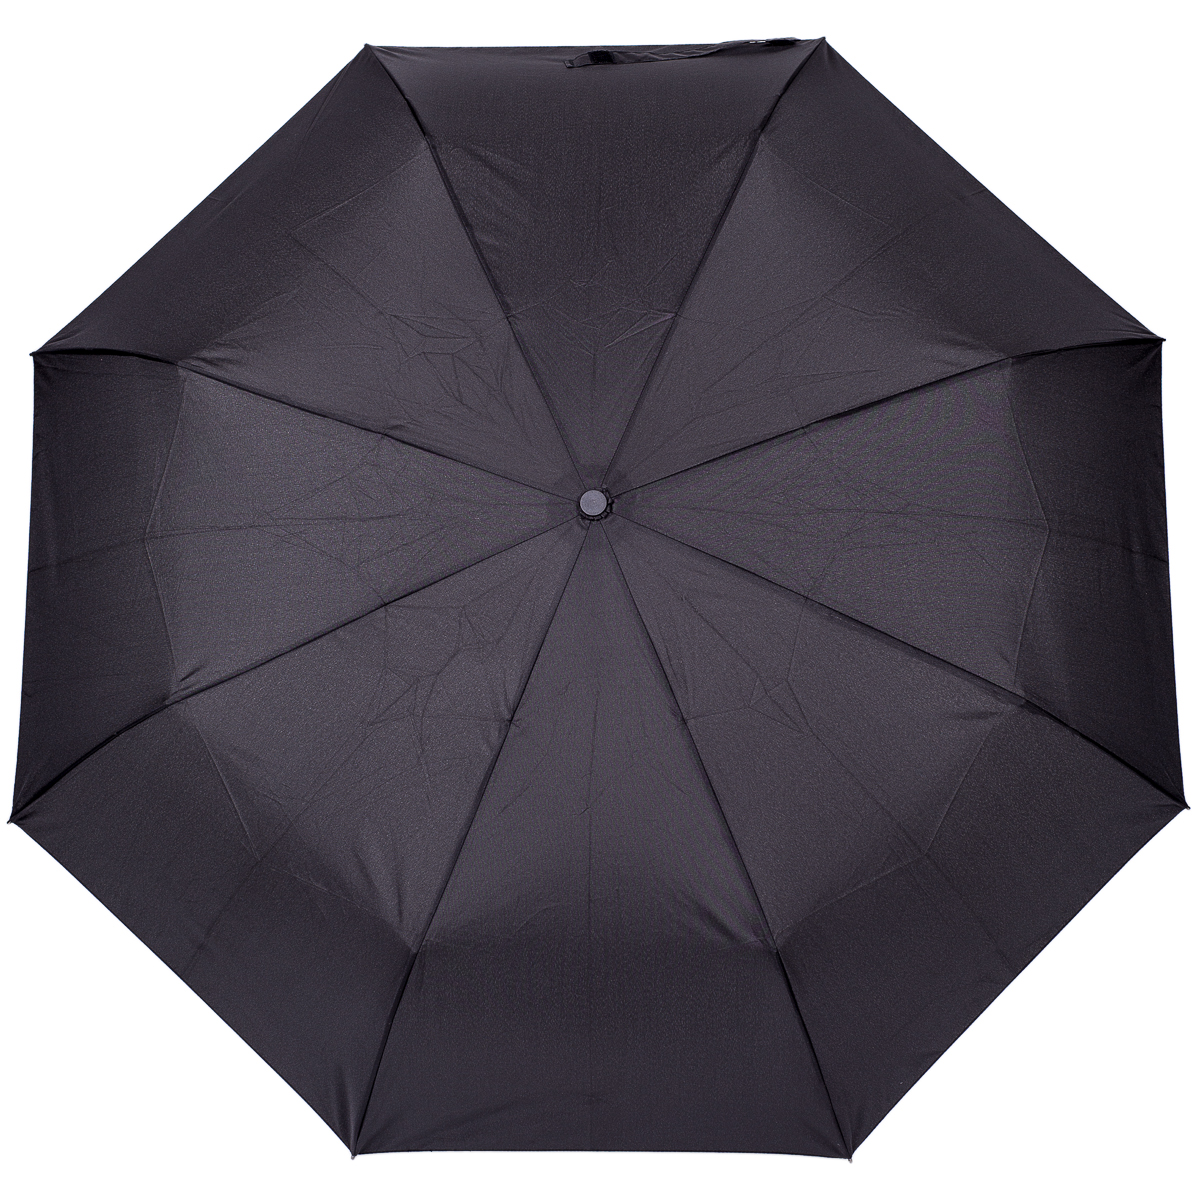 Зонт Stilla, механический, 3 сложения, цвет: черный. 795/black